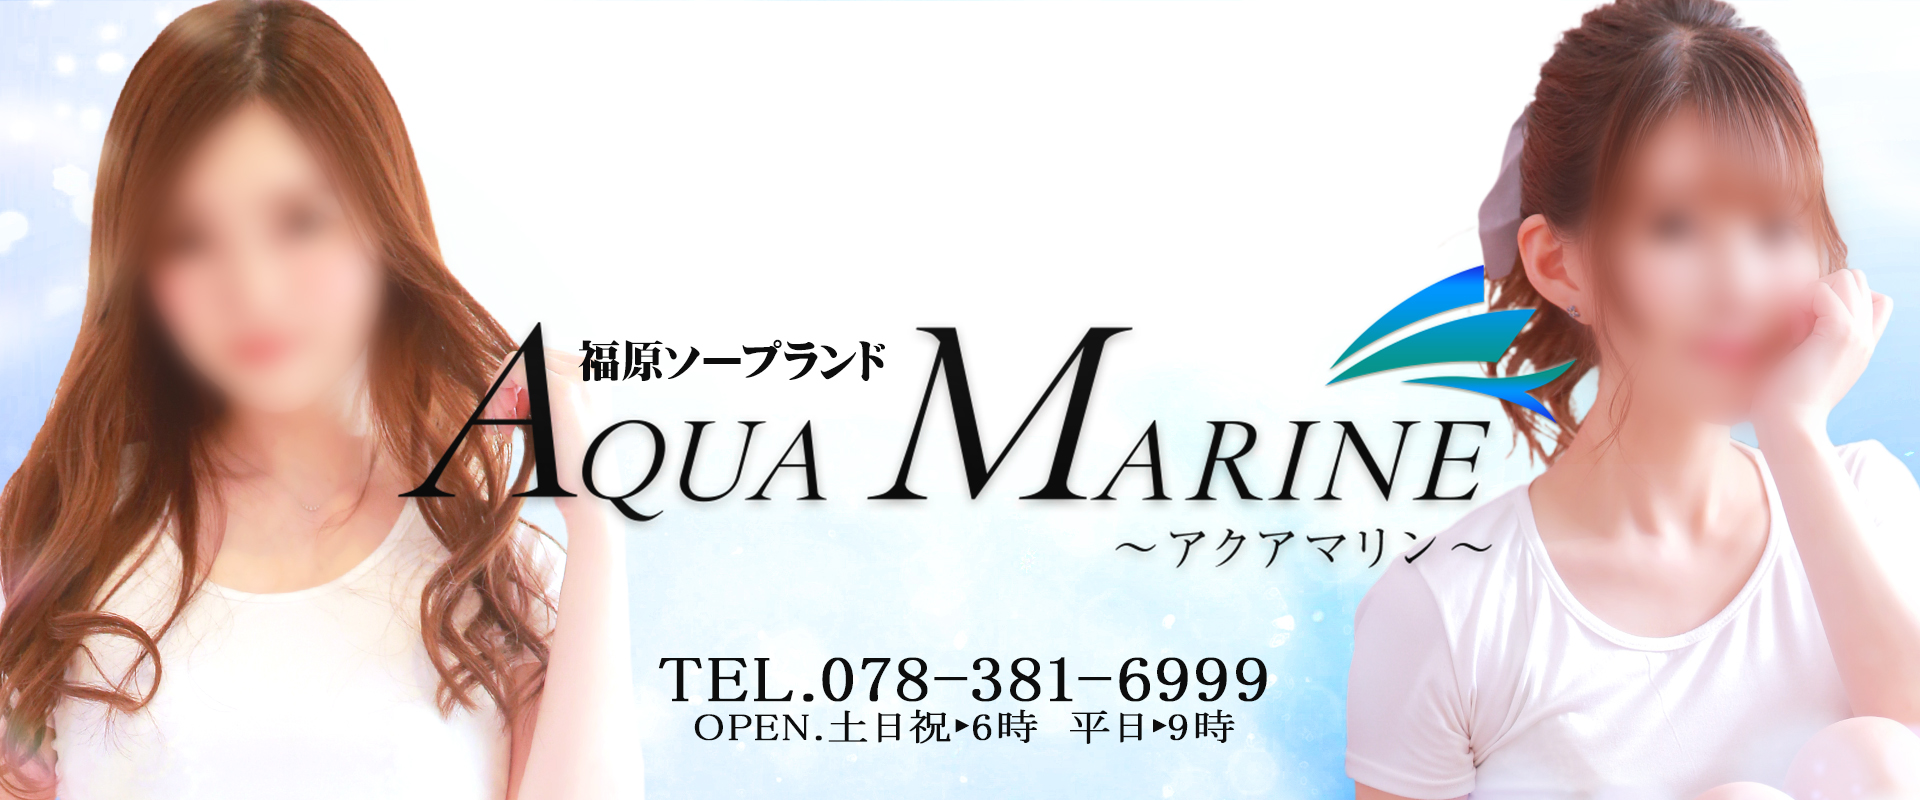 神戸福原のソープランド「AQUA MARINE アクアマリン」のオフィシャルサイトです。